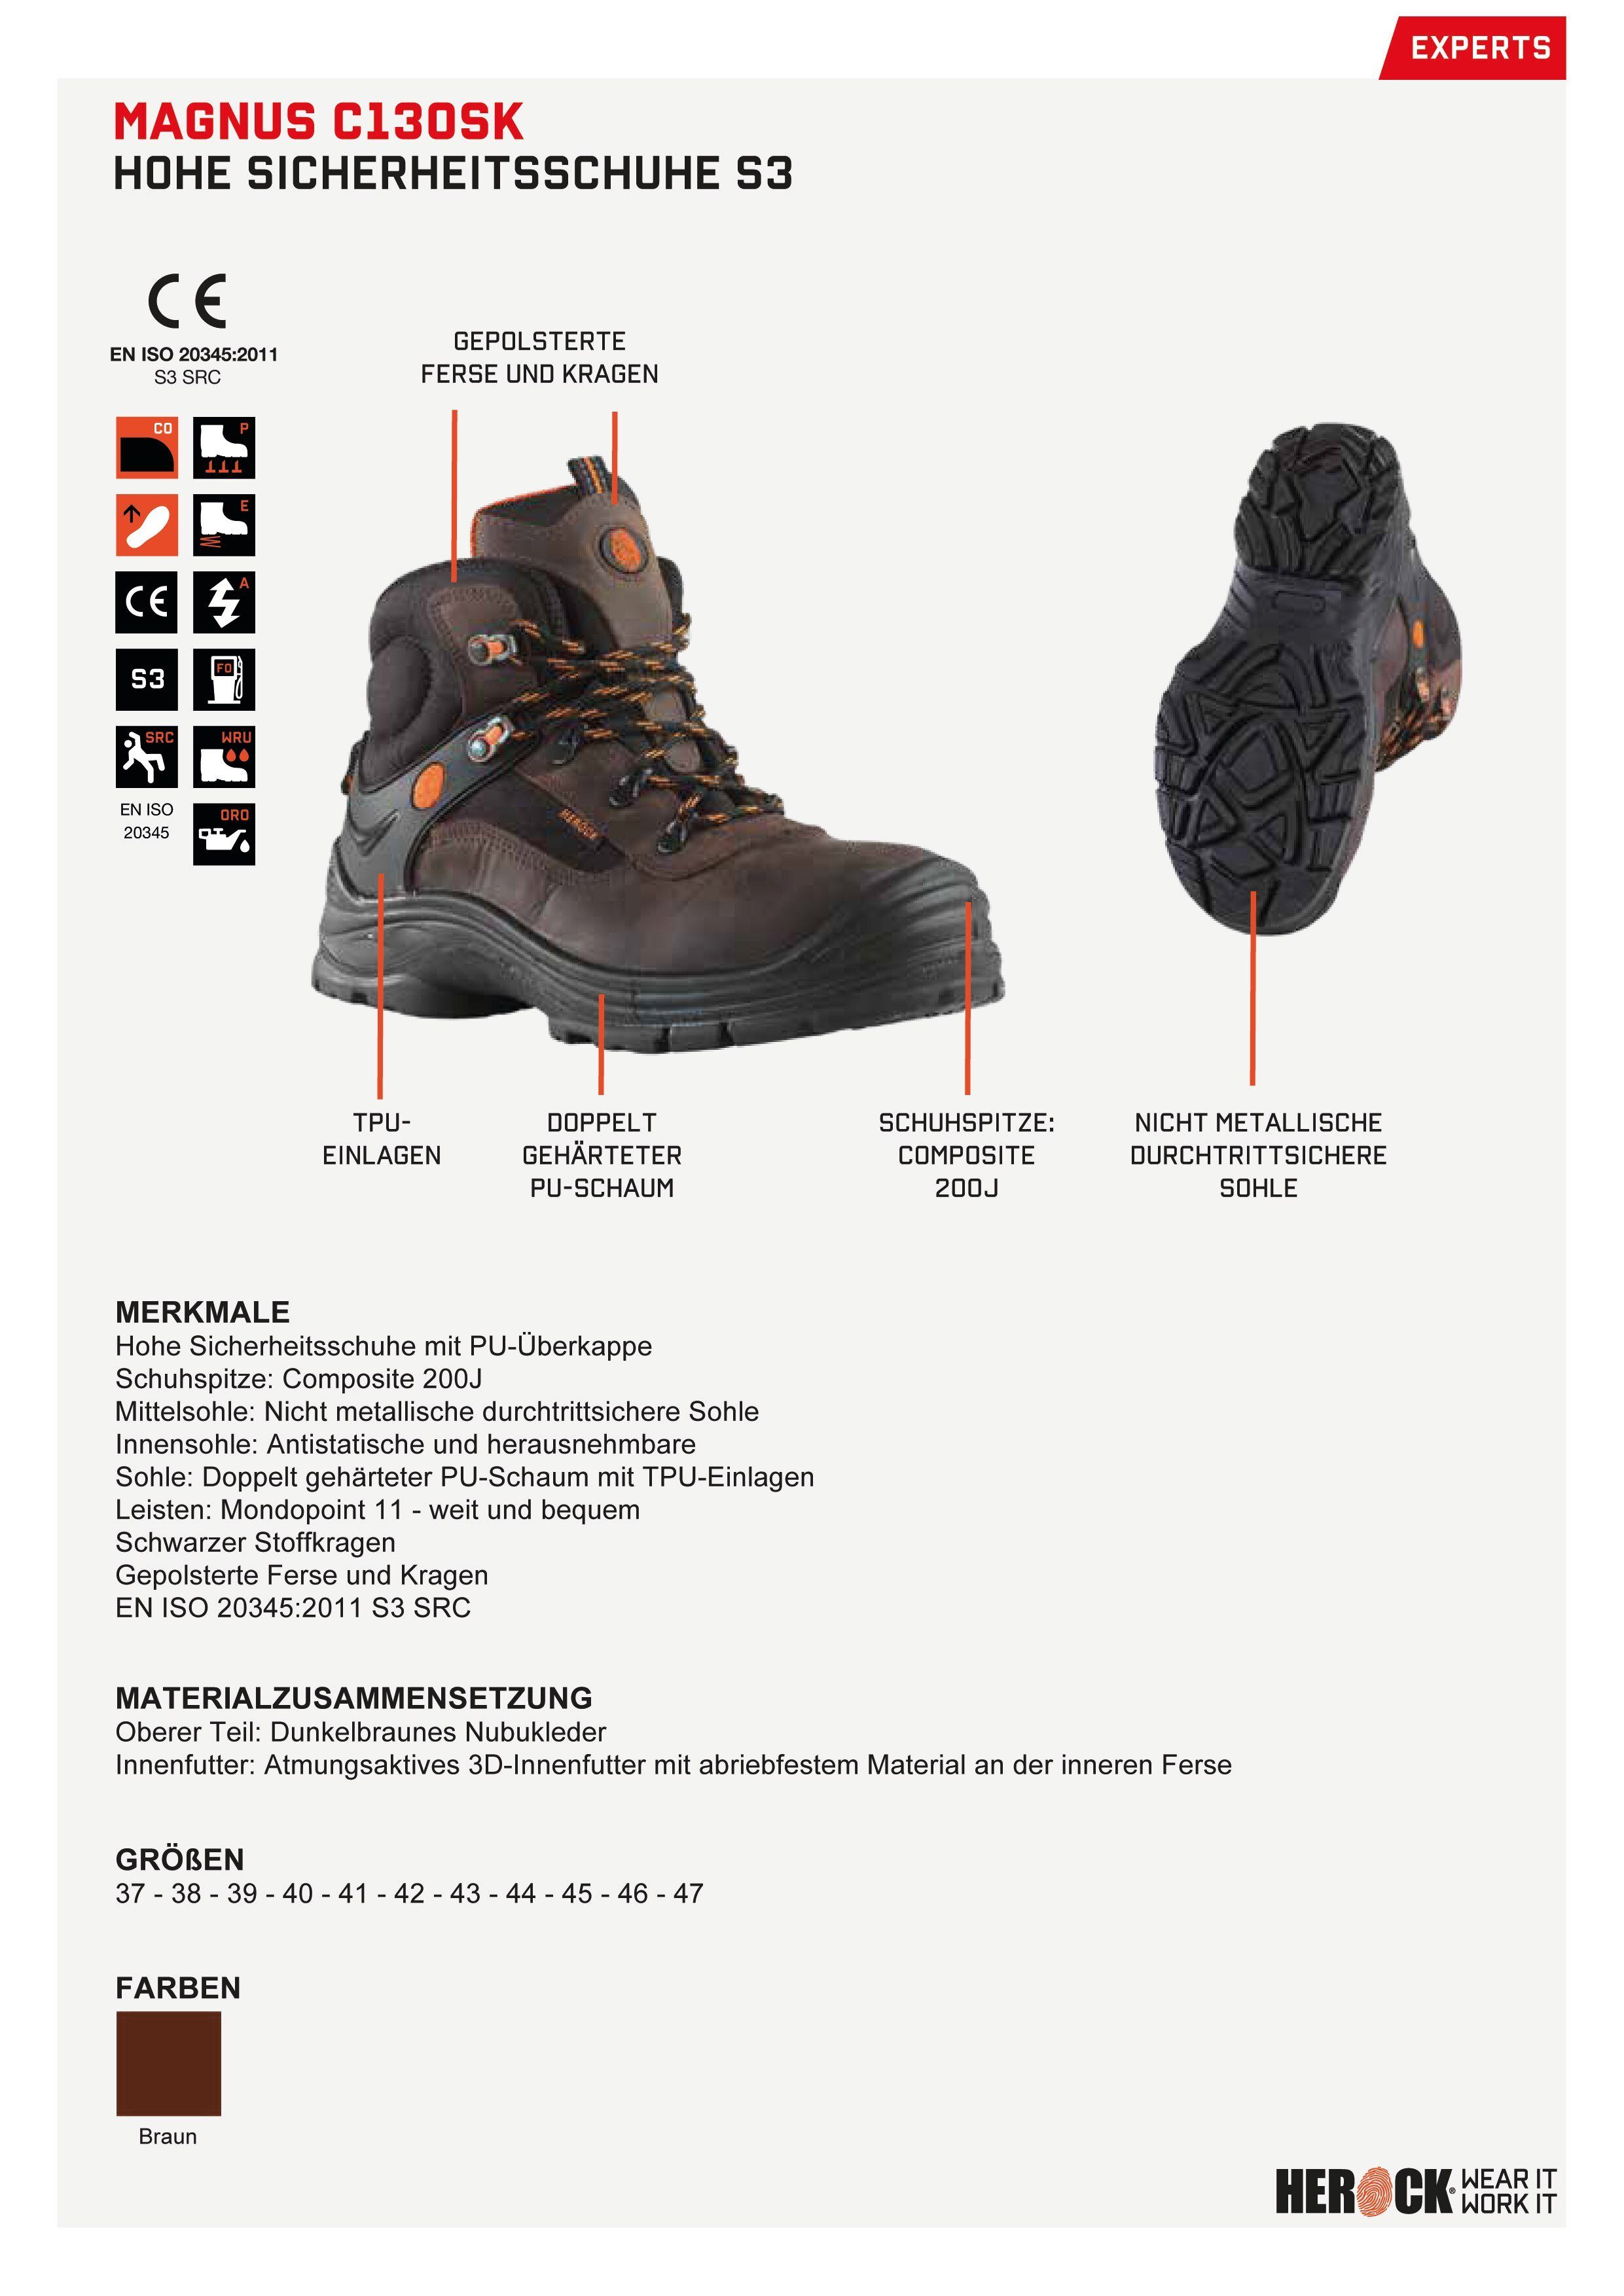 Herock Magnus High Compo S3 Echtes Schuhe durchtrittsicher, Leder, Klasse weit, nicht-metallisch, S3 Sicherheitsschuh